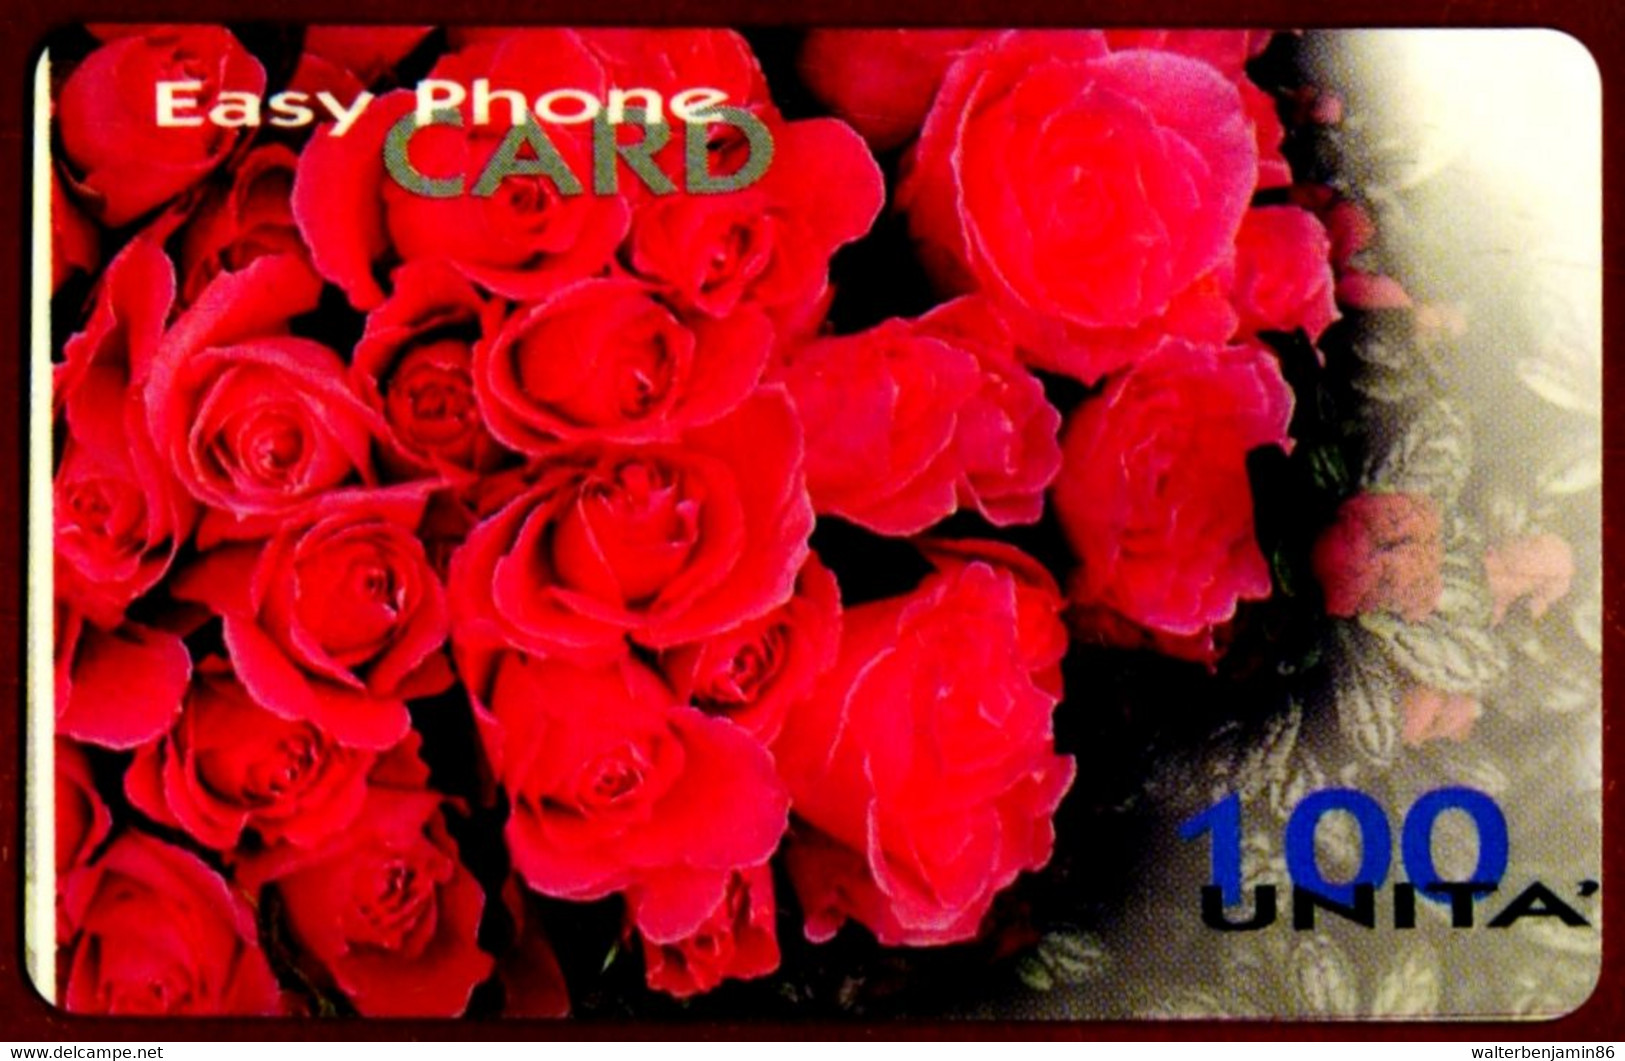 SCHEDA TELEFONICA PROTOTIPO EASY PHONE CARD (VALORE COLORE BLU) DIFETTO STAMPA - Tests & Service